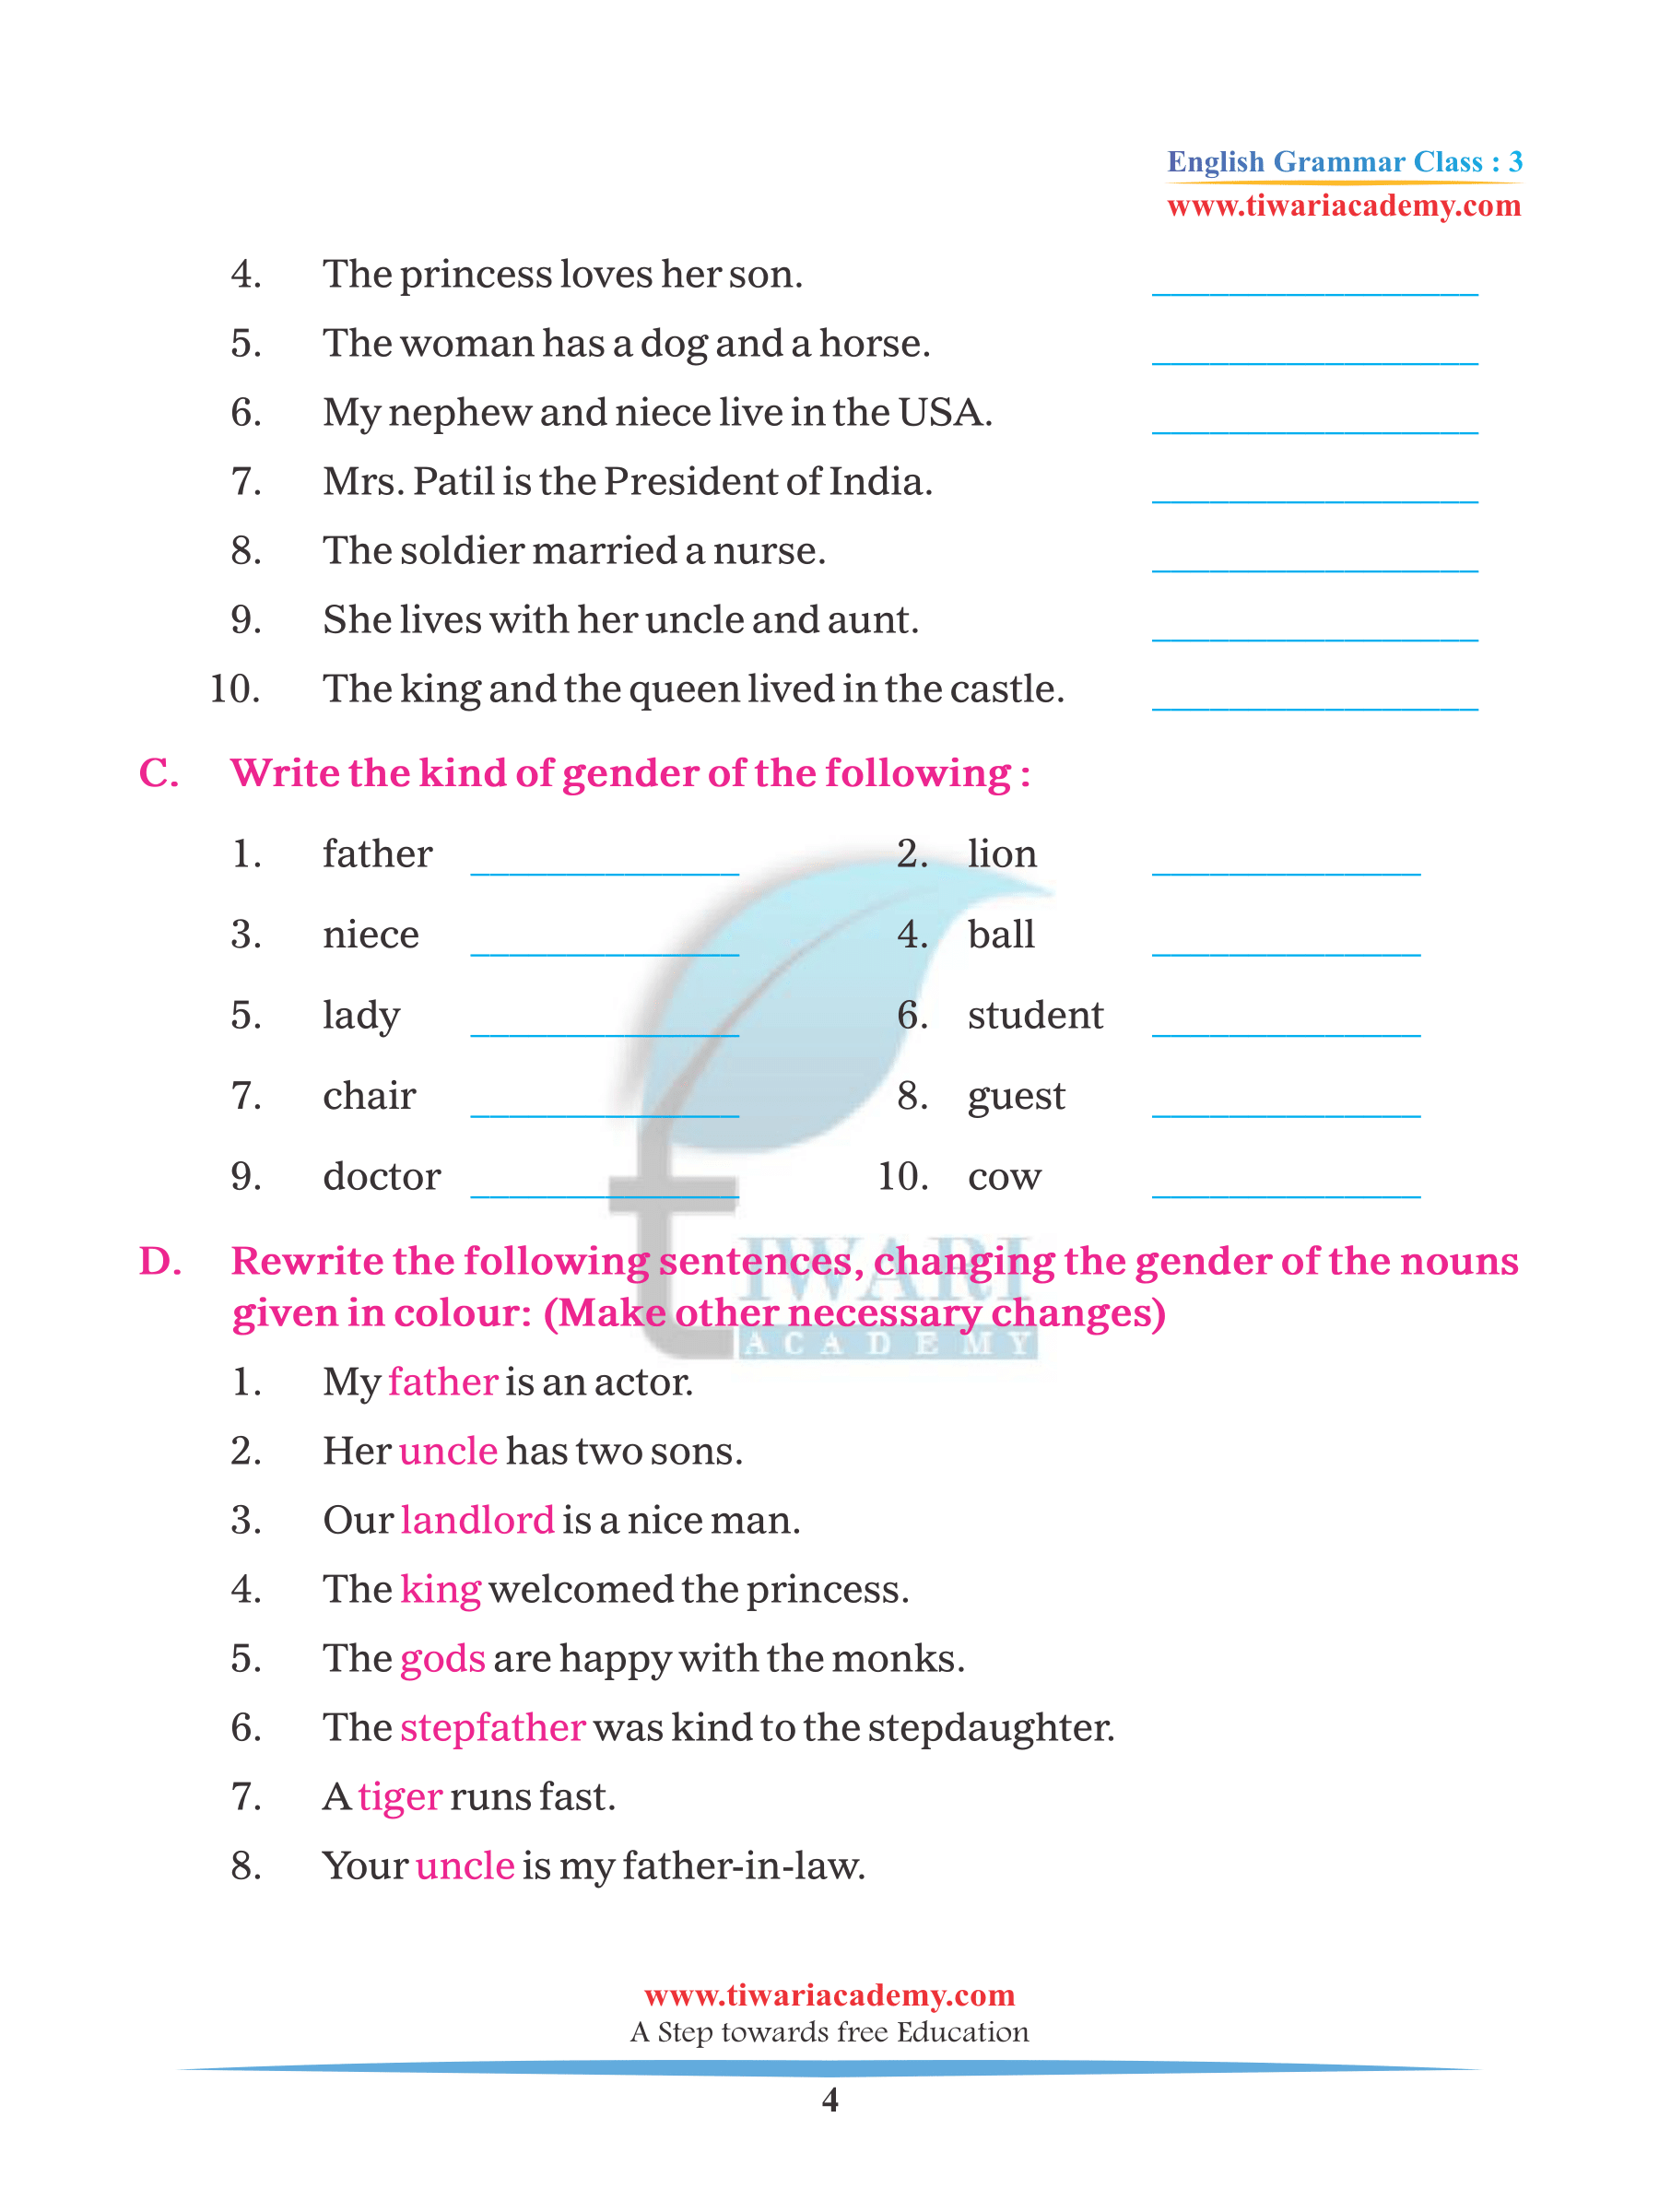 class-3-english-grammar-chapter-6-noun-gender-for-2022-2023-pdf